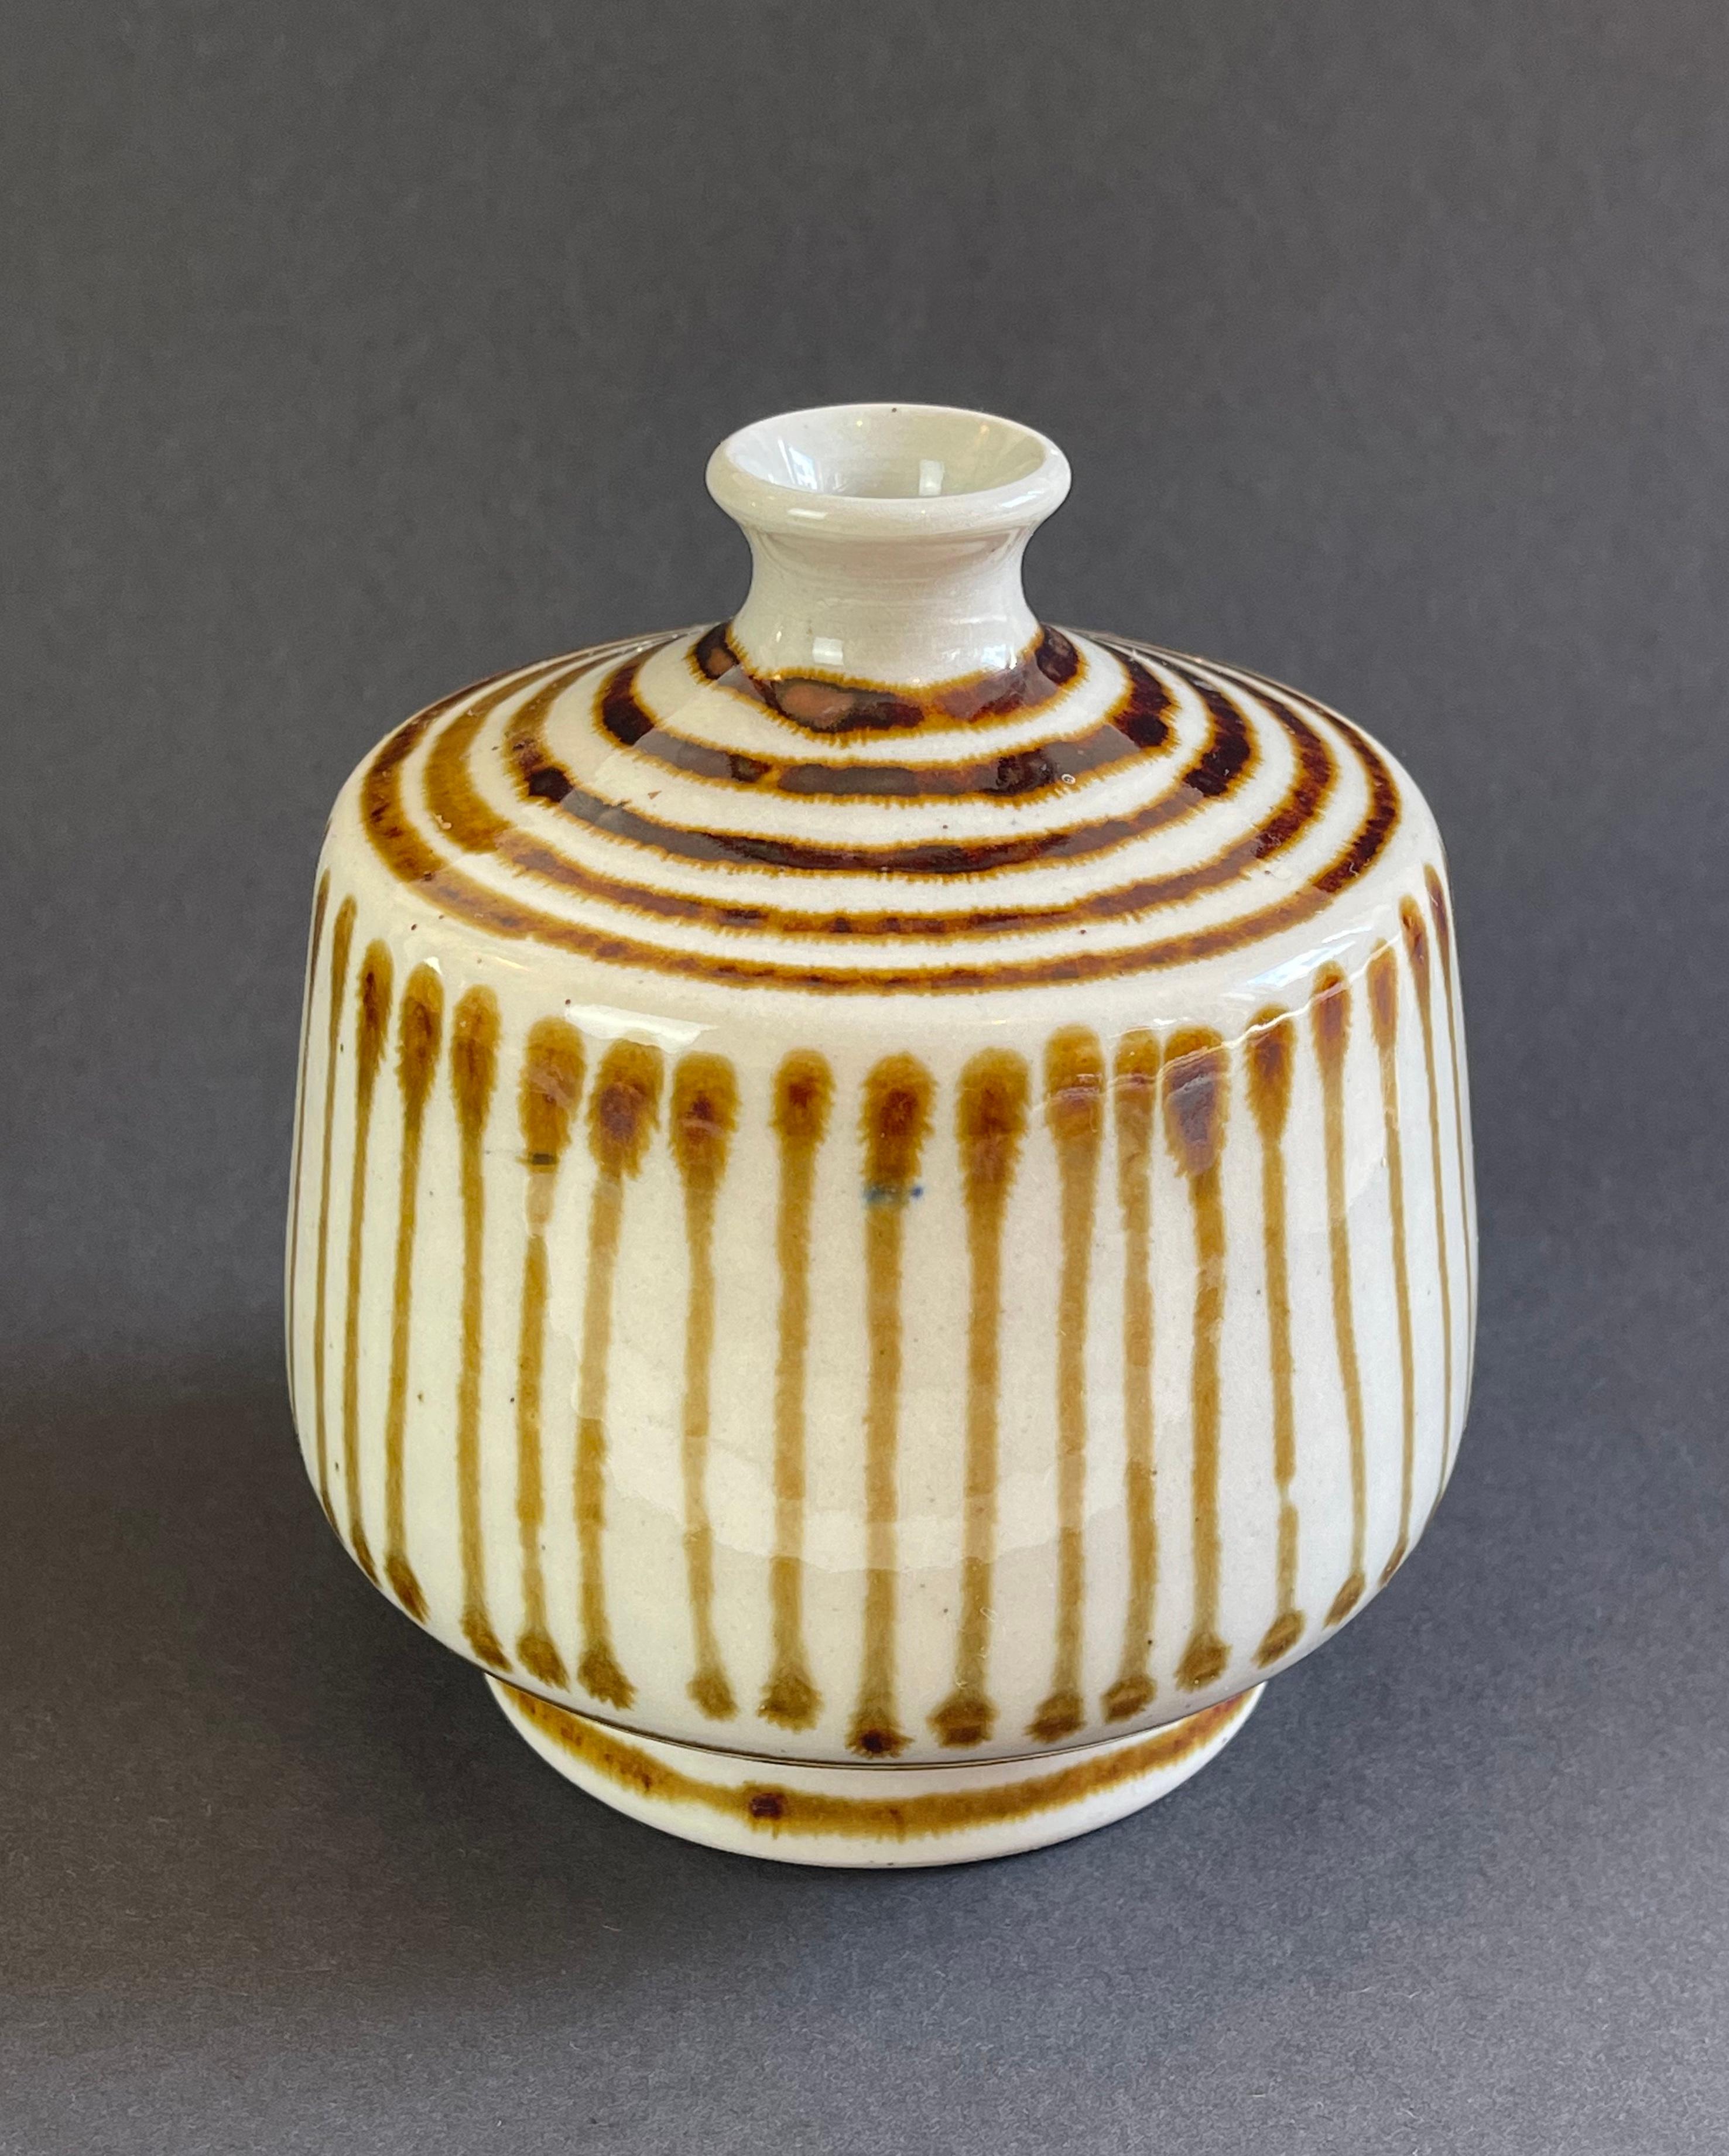 Ce vase, fait et peint à la main en céramique, est probablement d'origine danoise.
De belles rayures couleur caramel sur le matériau de base beige naturel.
Avec une touche de style japonais, cette pièce est unique en son genre.
Signé ''W'' & ''21''.